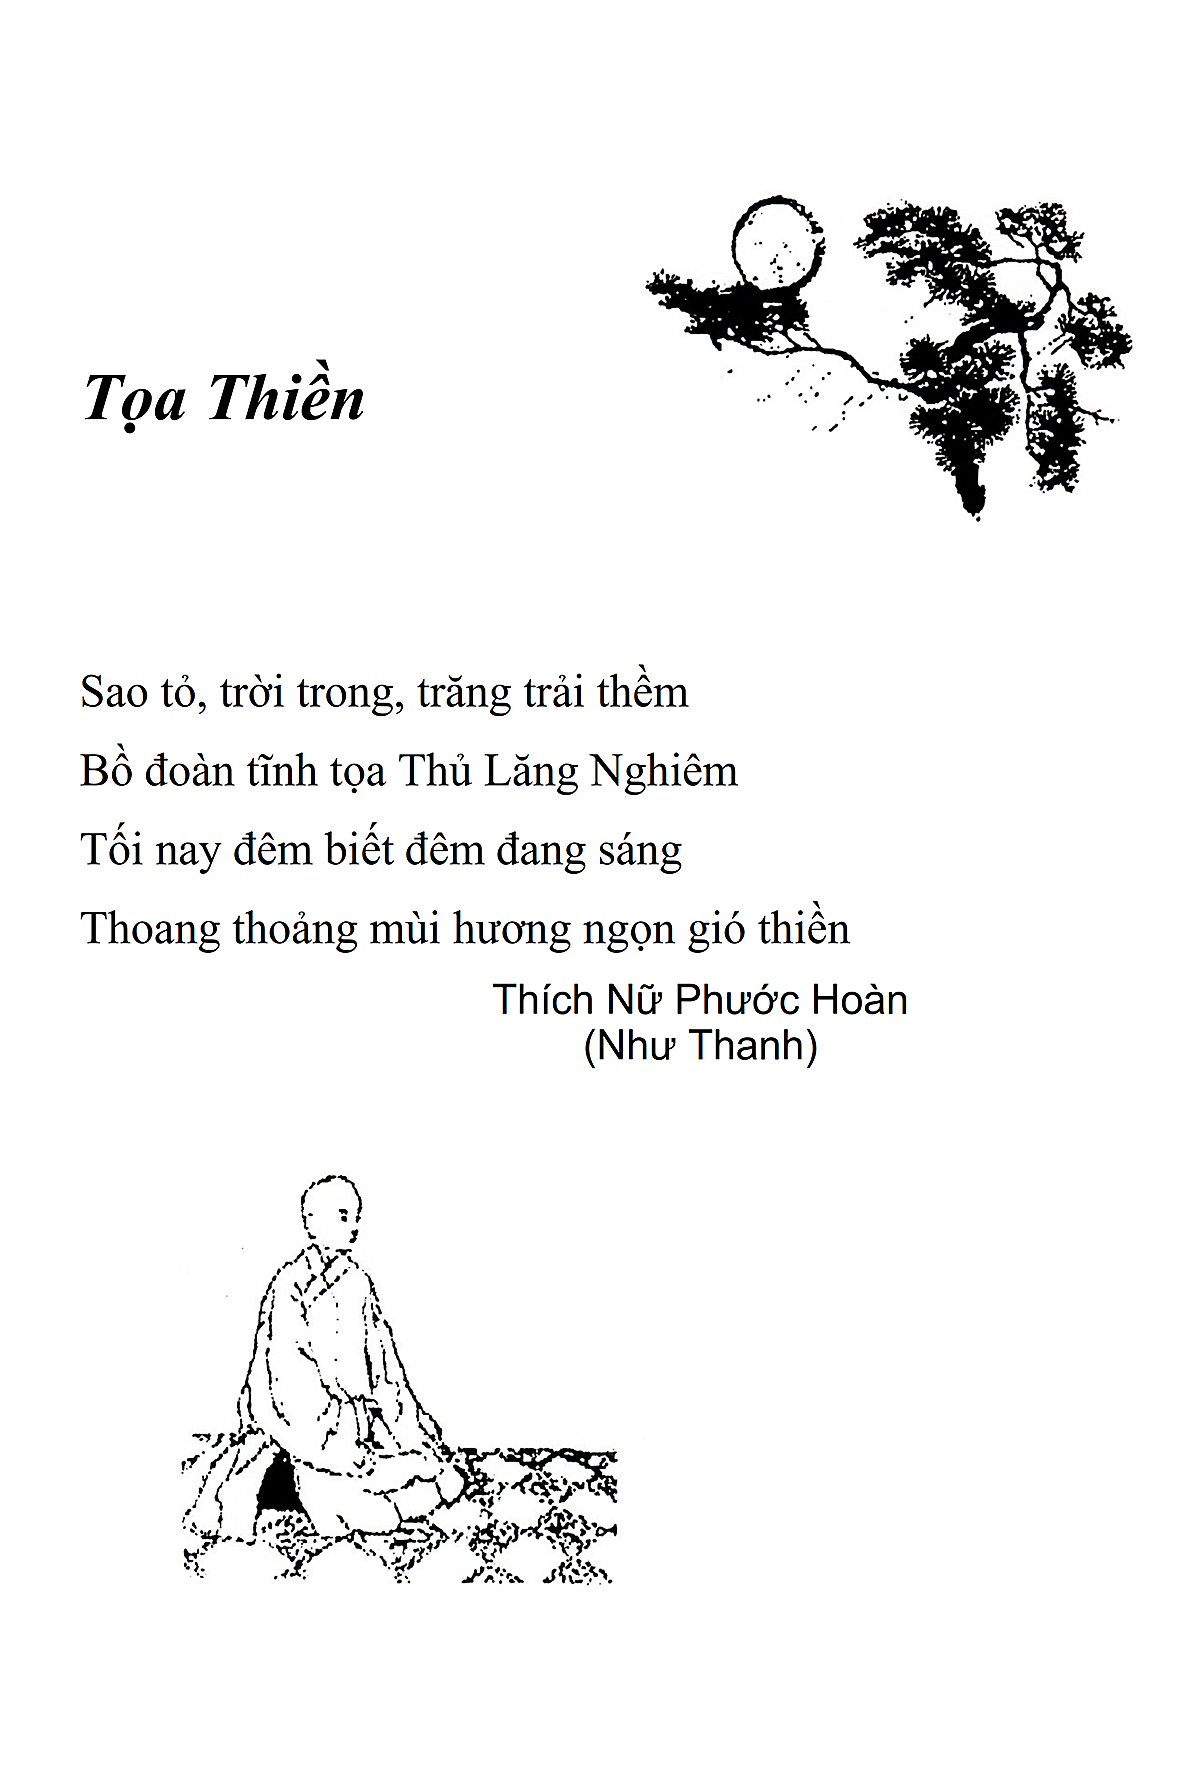 Toa Thien